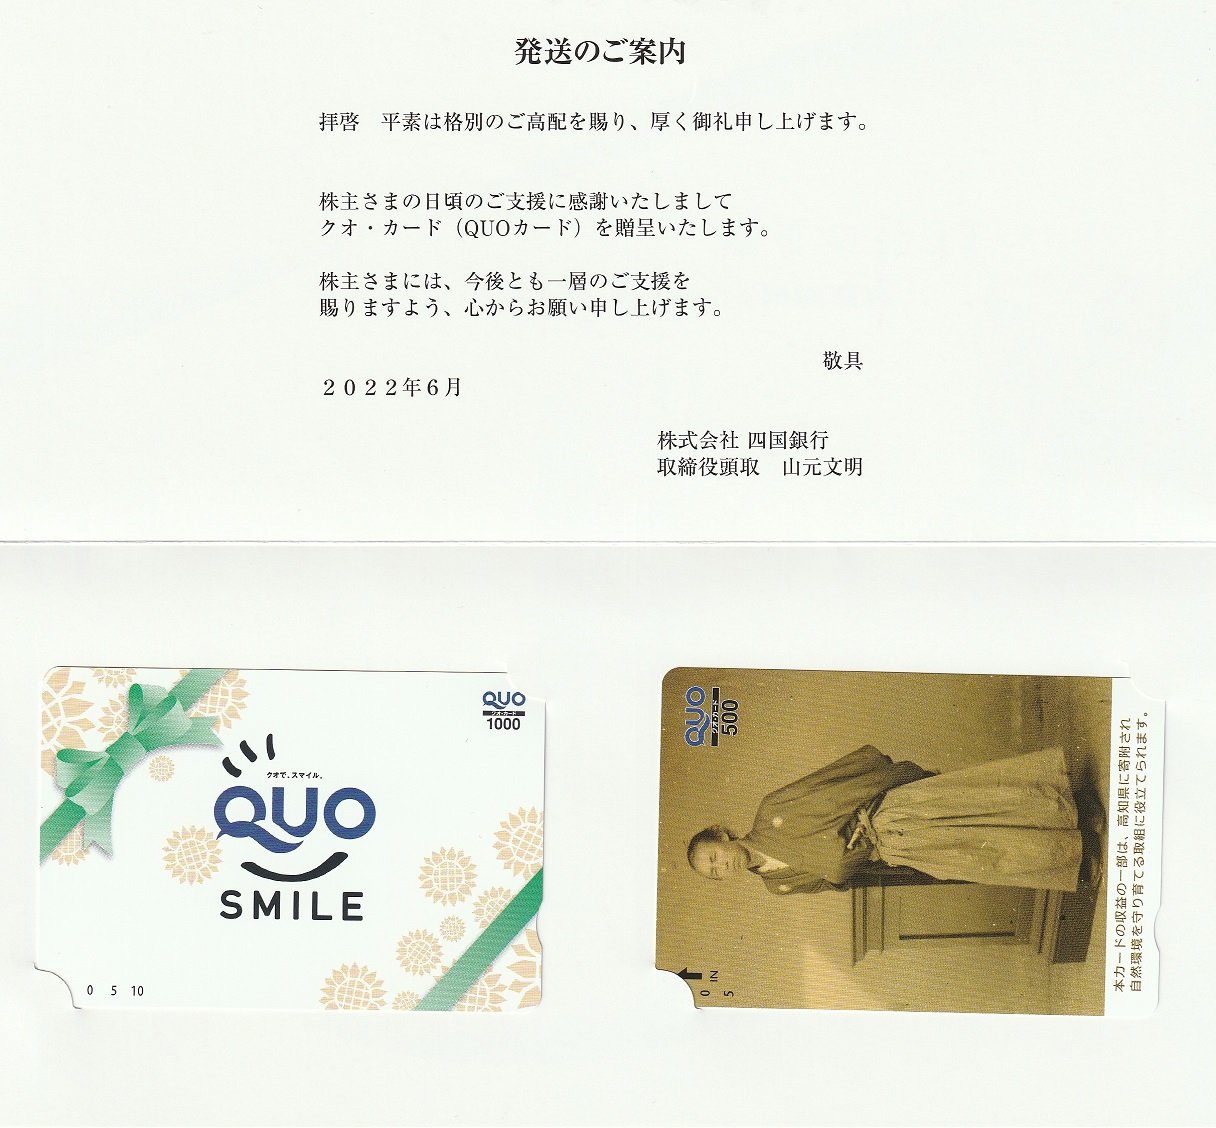 【3月優待】株式会社四国銀行からQUOカードが到着しました